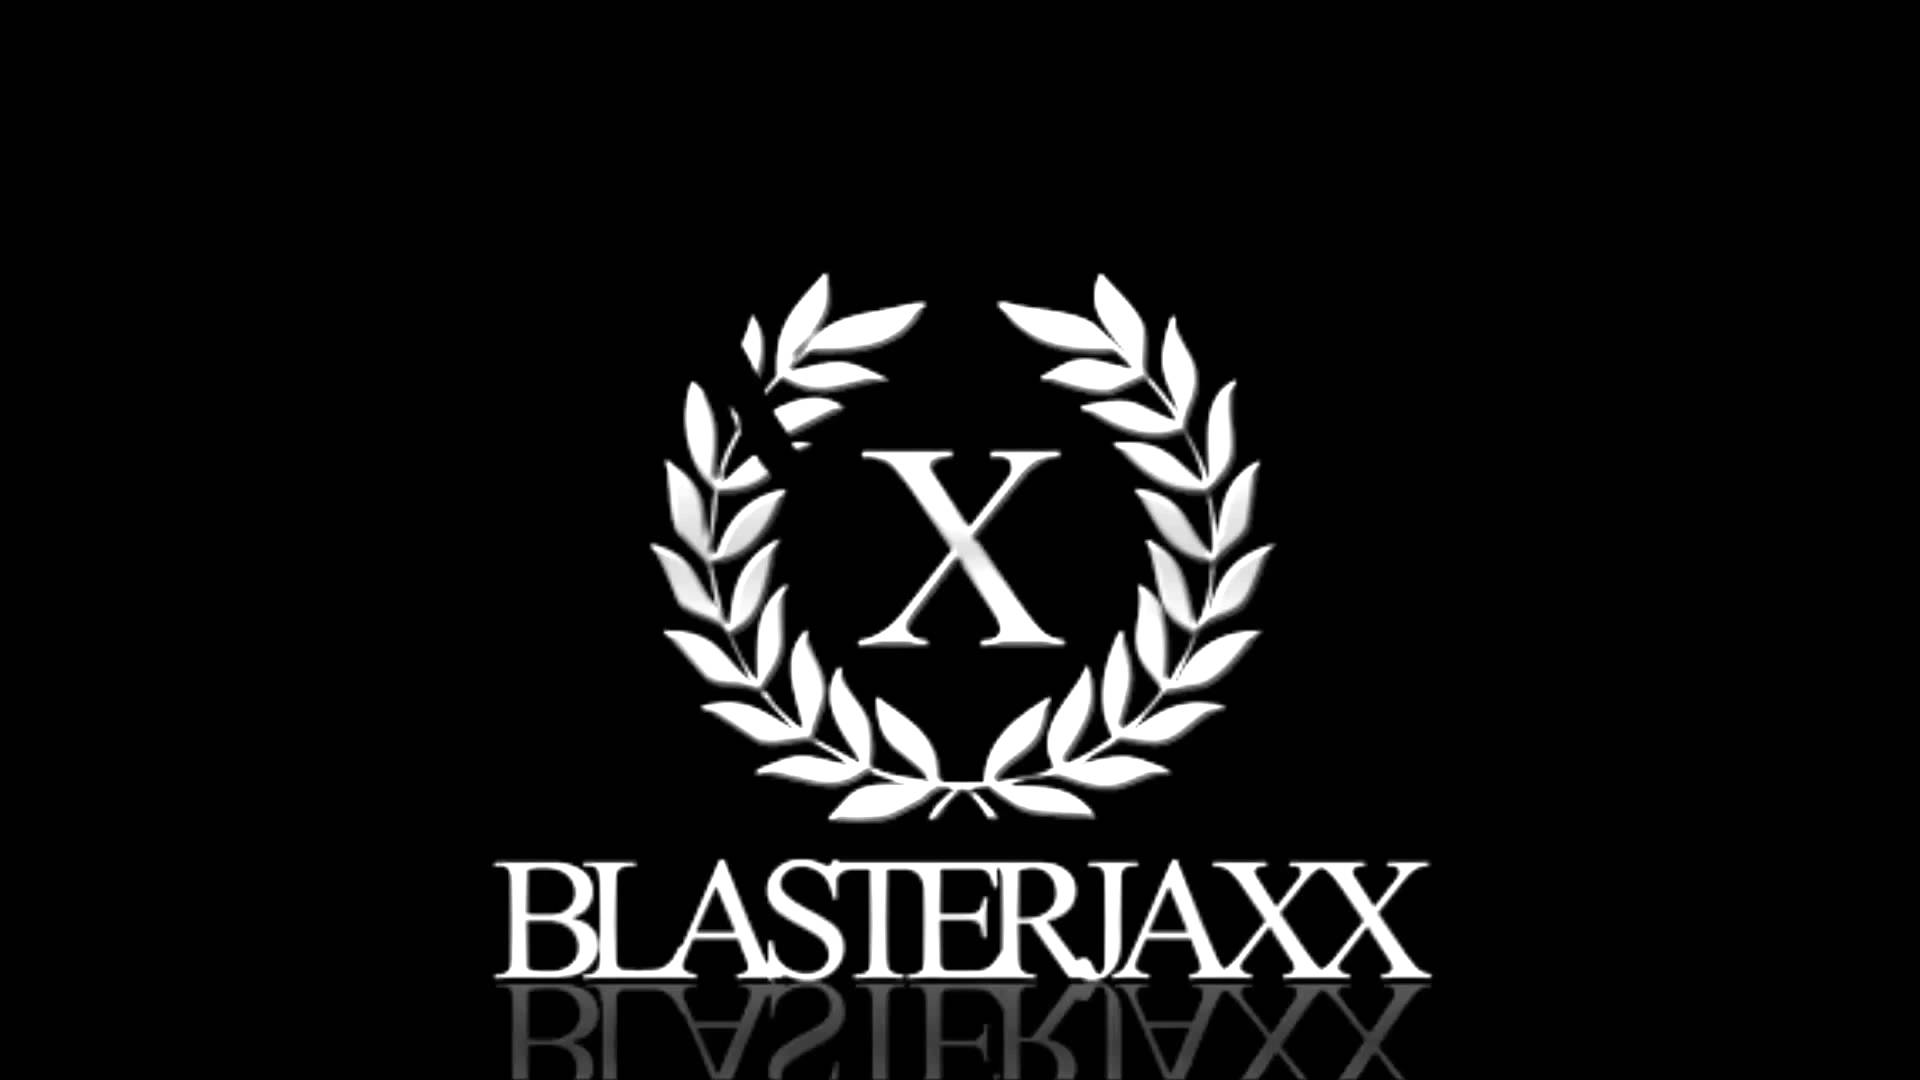 Blasterjaxx Fifteen Bootleg Remix By Greg Walther